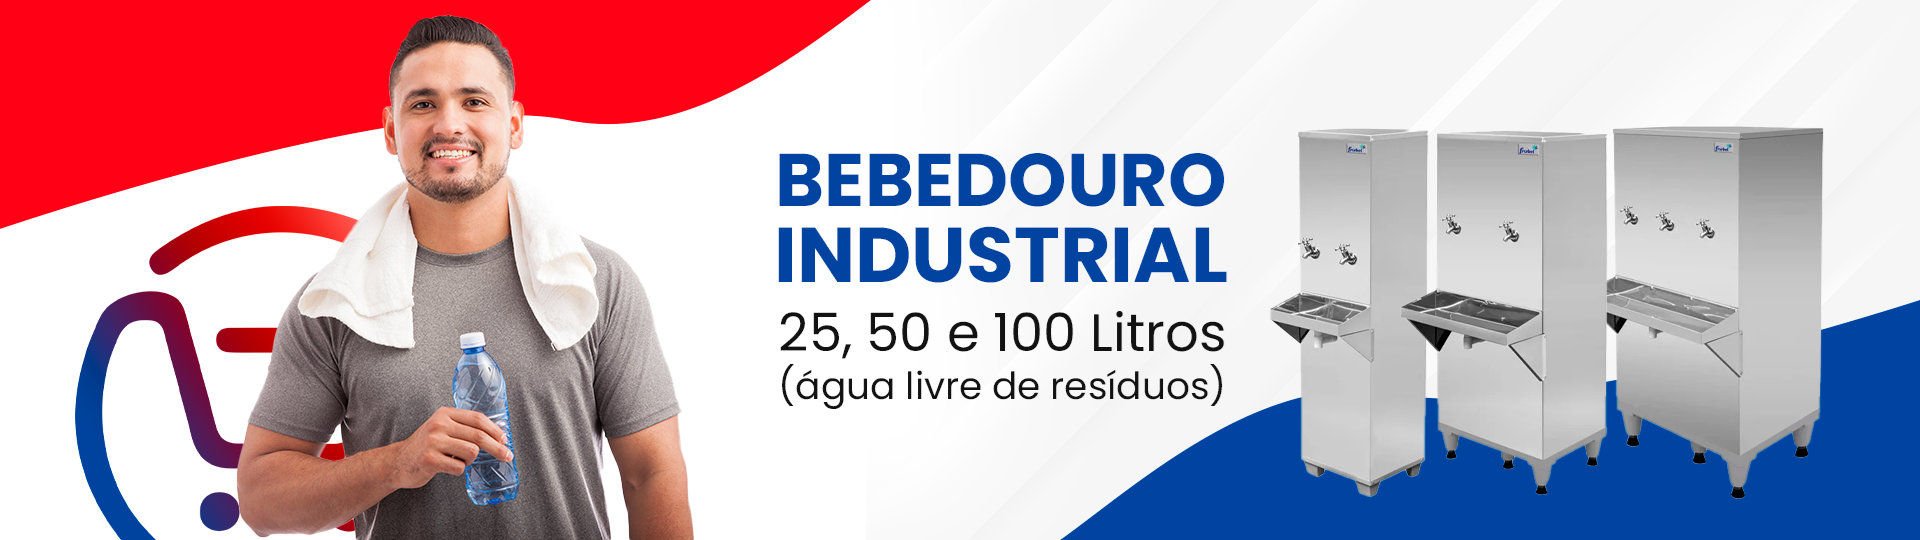 Bebedouro Industrial